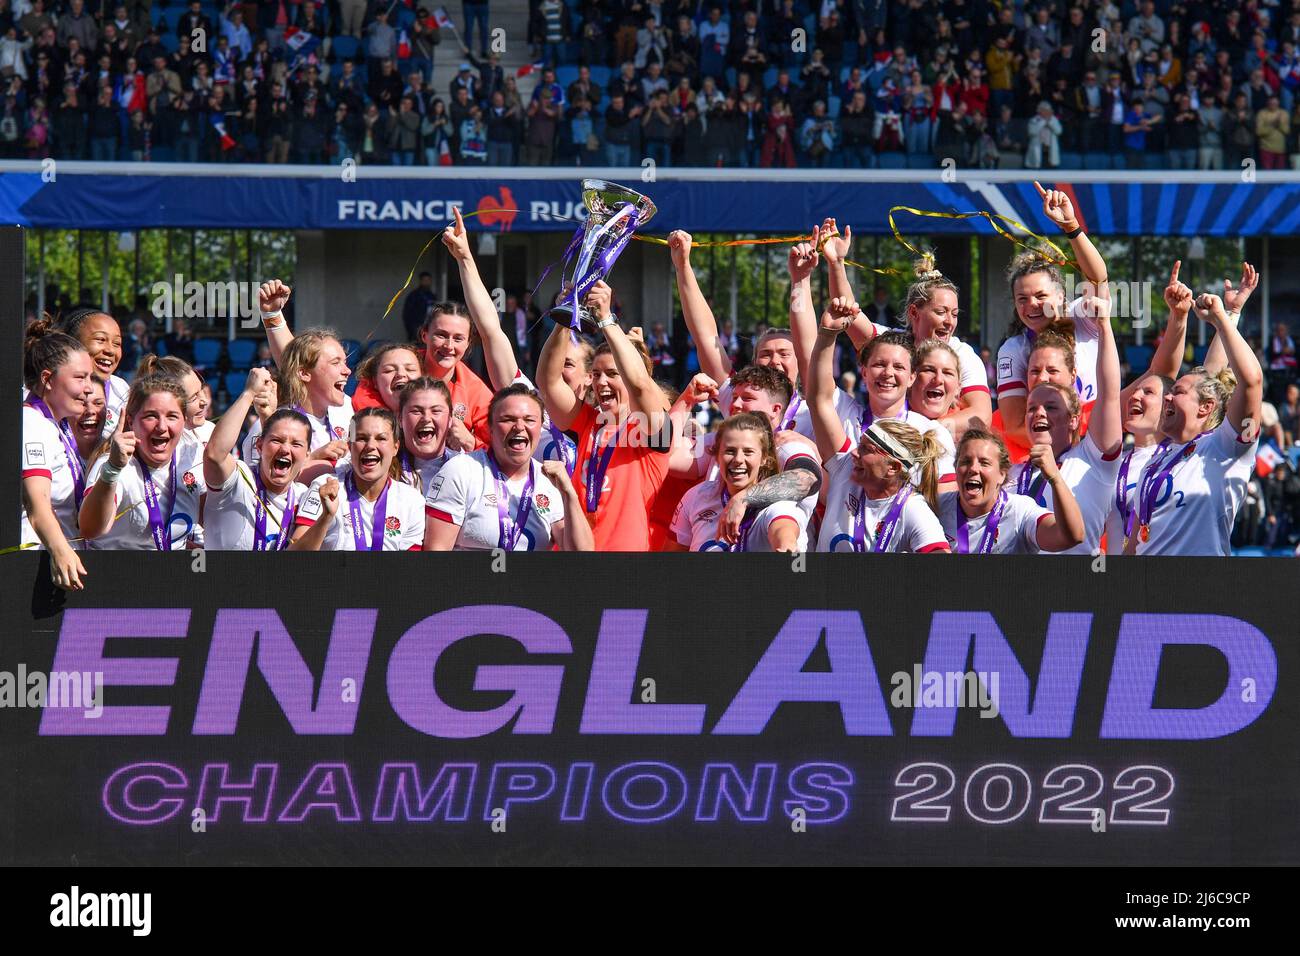 Inglaterra levanta el trofeo después de ganar las seis naciones de las mujeres de Tiktok en el Stade Jean Dauger en Beyonne, Francia. Fecha de la foto: Sábado 30 de abril de 2022. Foto de stock